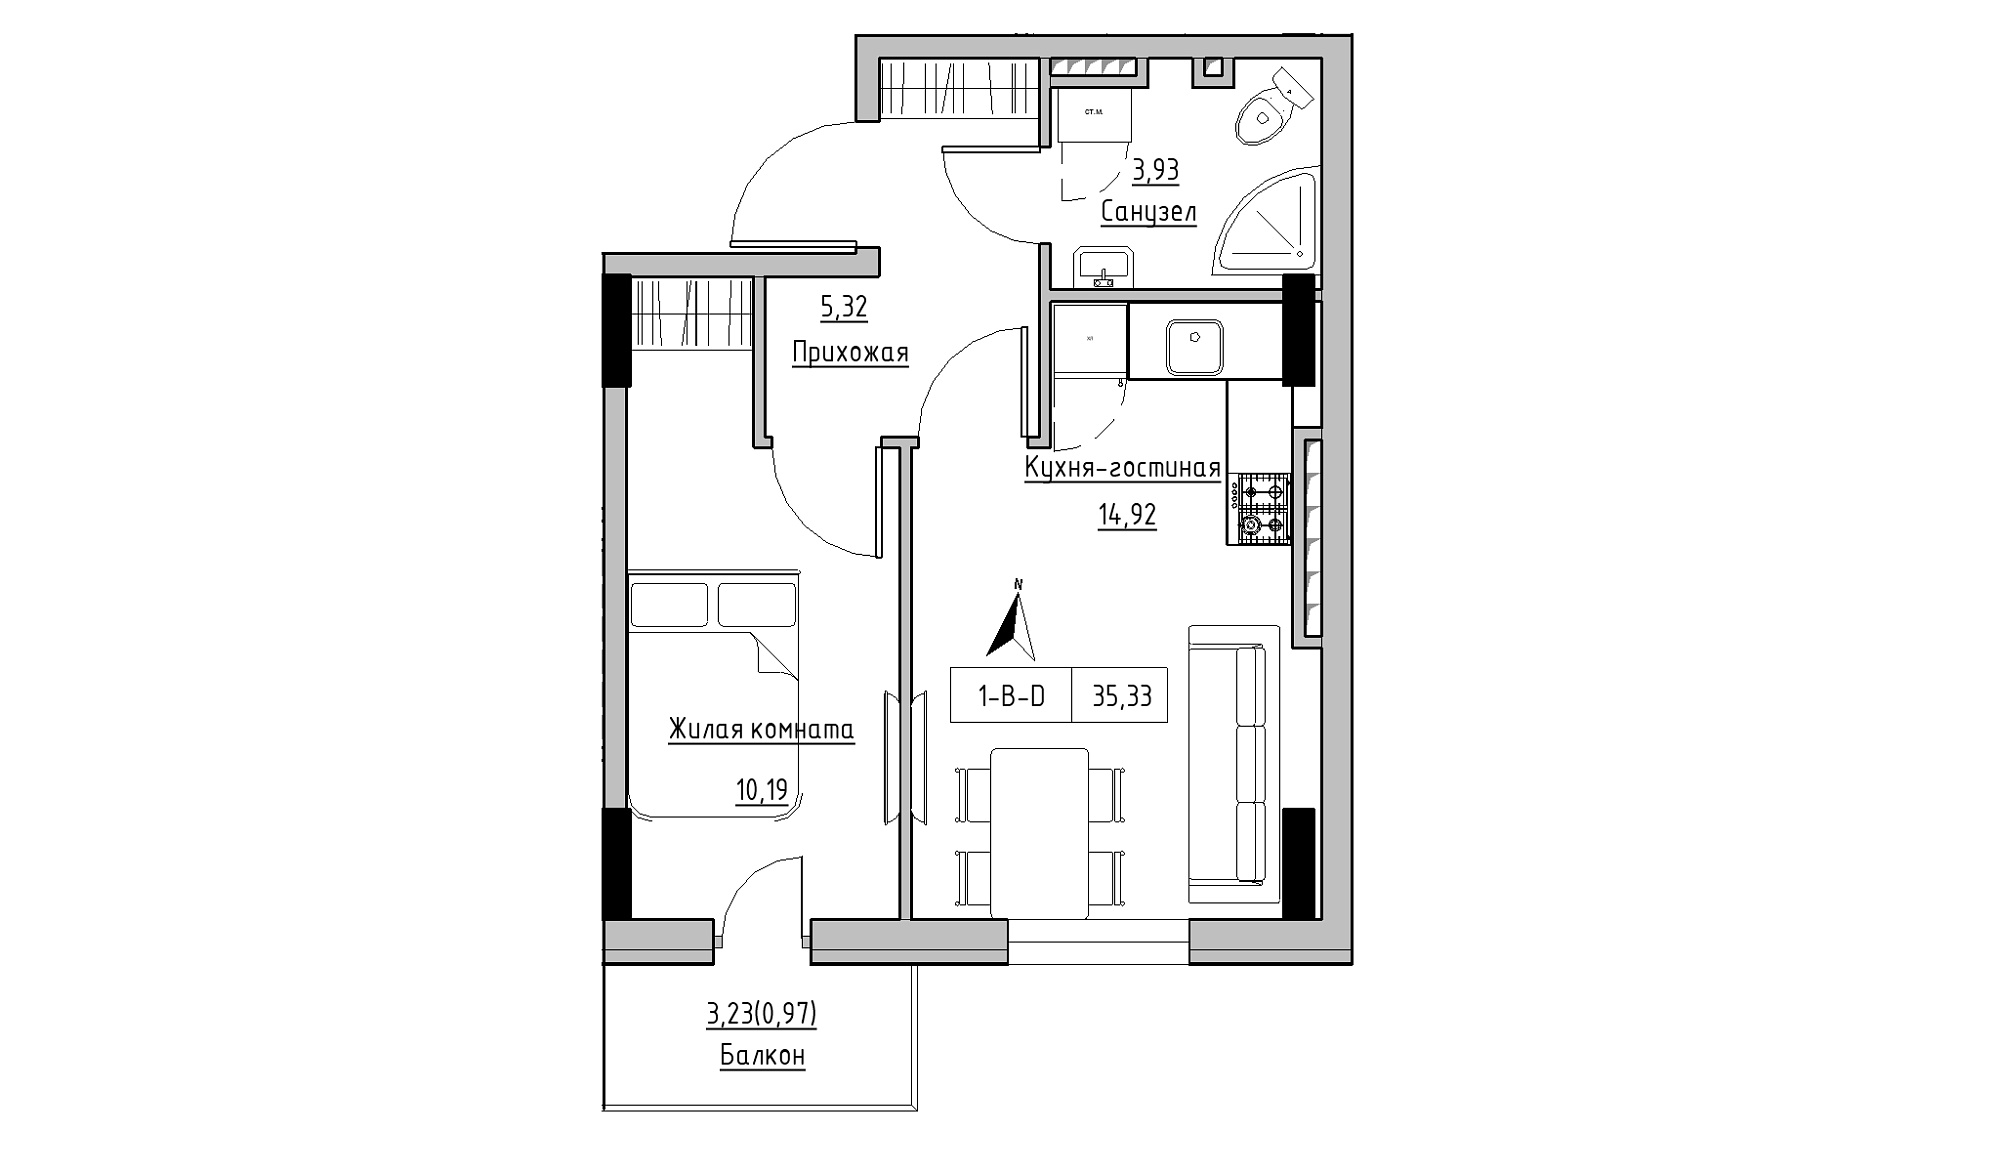 Планировка 1-к квартира площей 35.33м2, KS-025-05/0012.